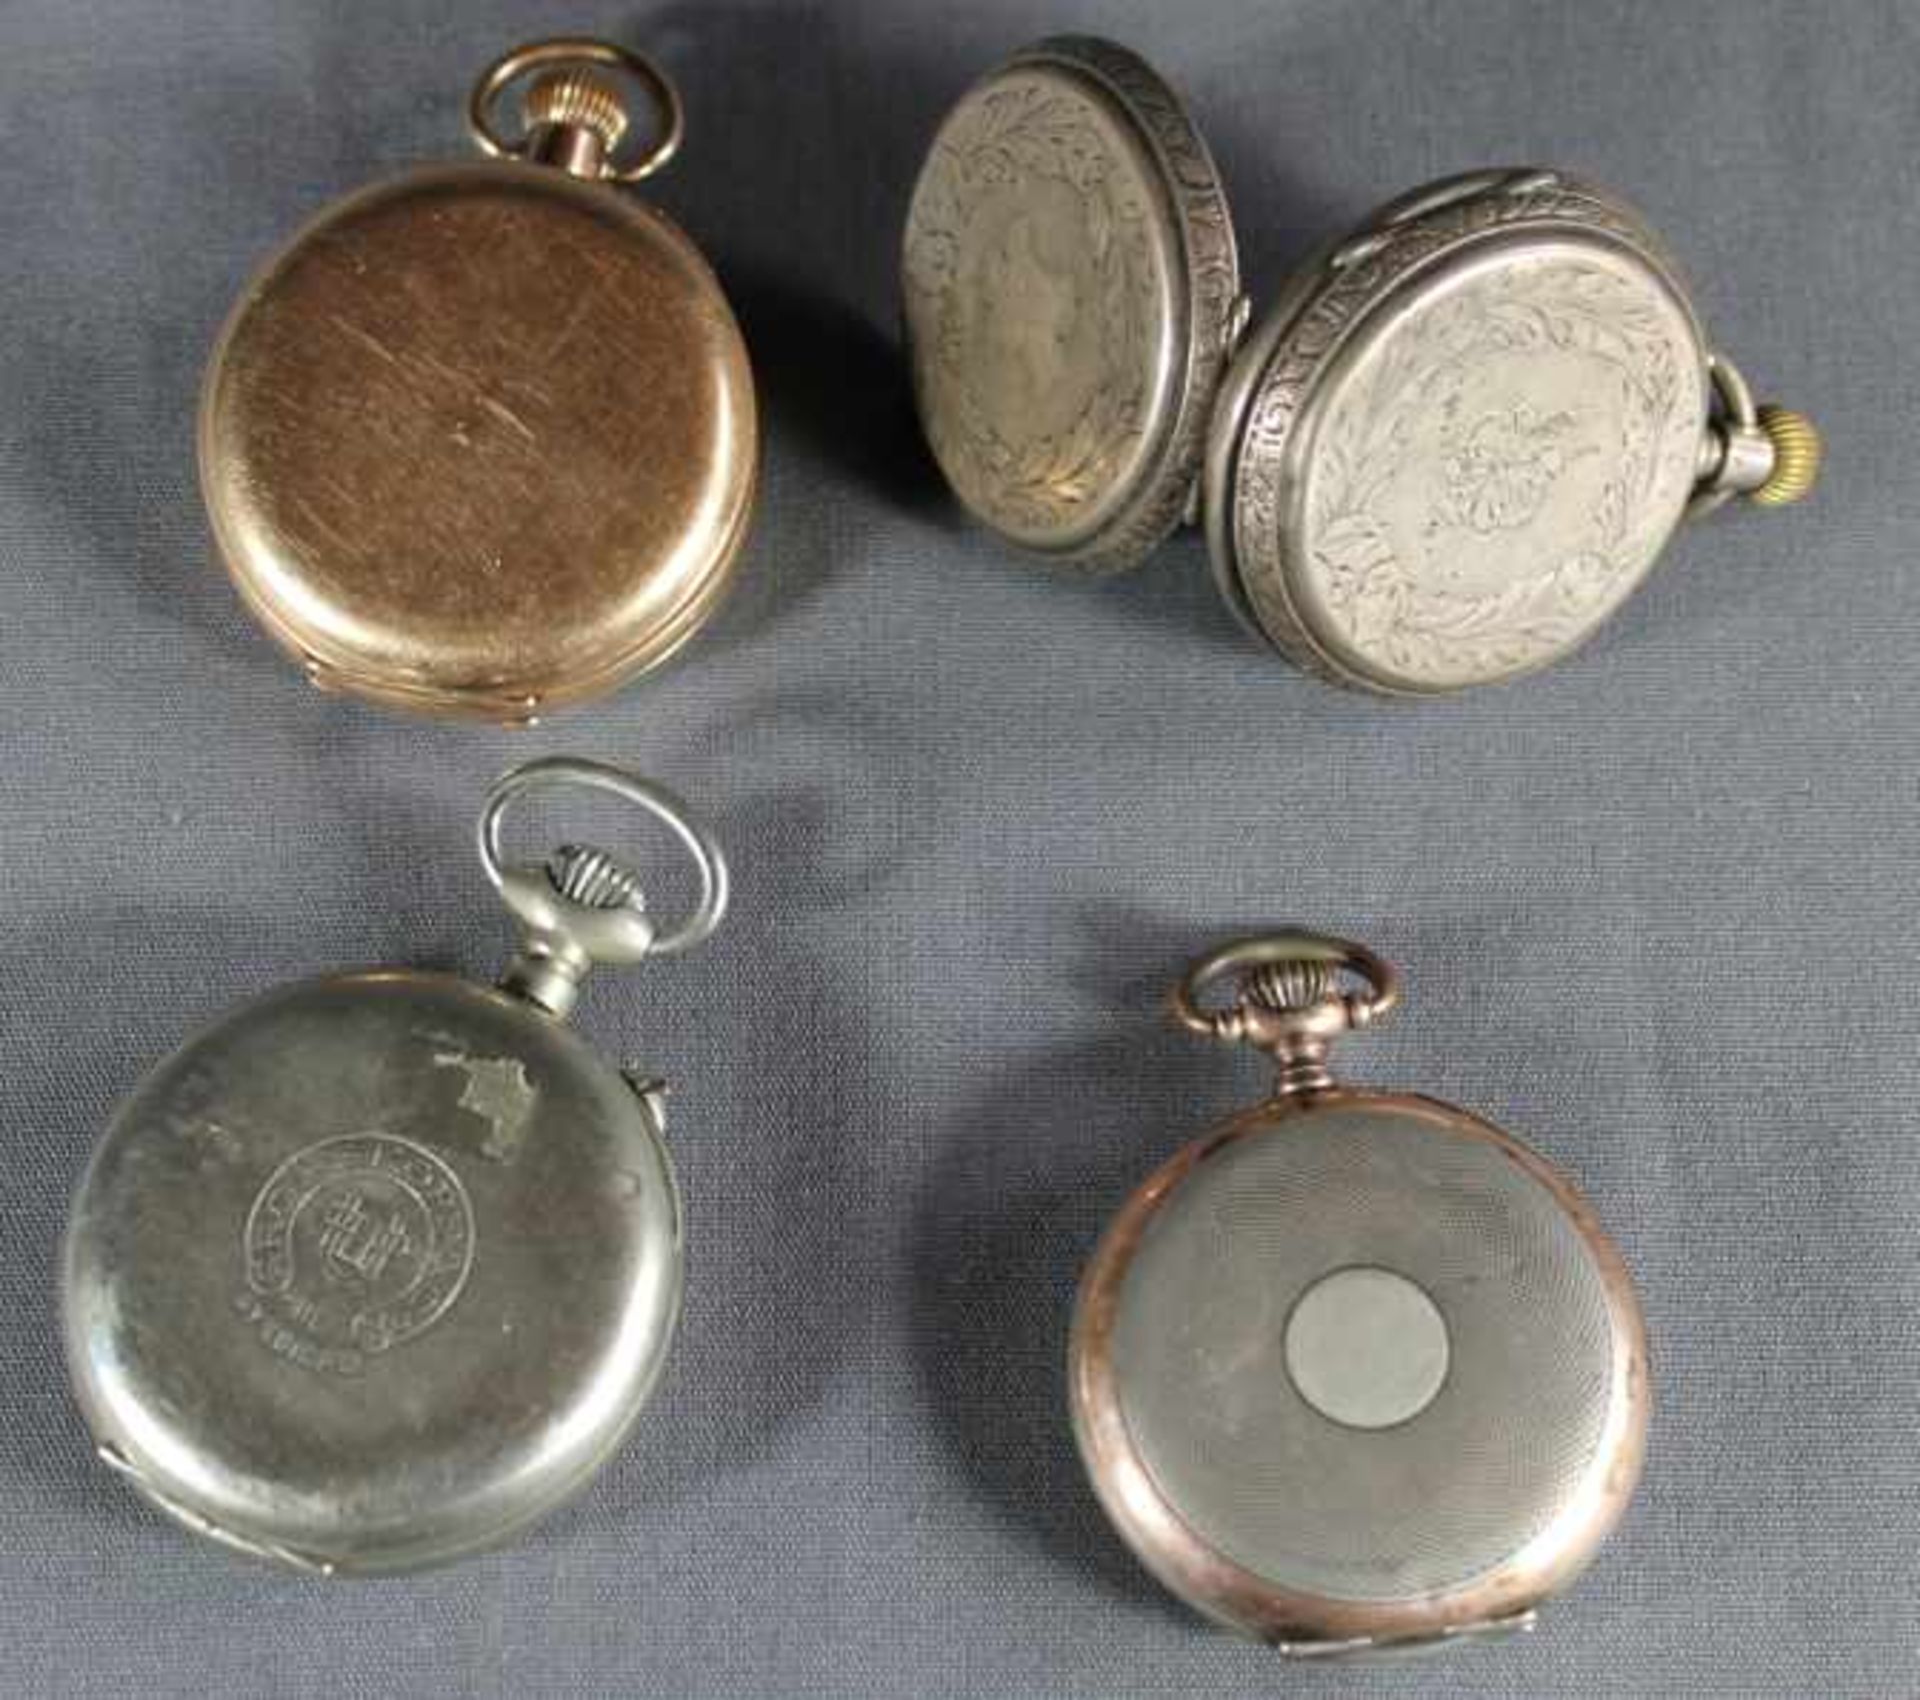 4 Taschenuhren Silber/10ct. vergoldet, unterschiedliche Marken u.a. Alpina, Rosskopf, und - Image 2 of 3